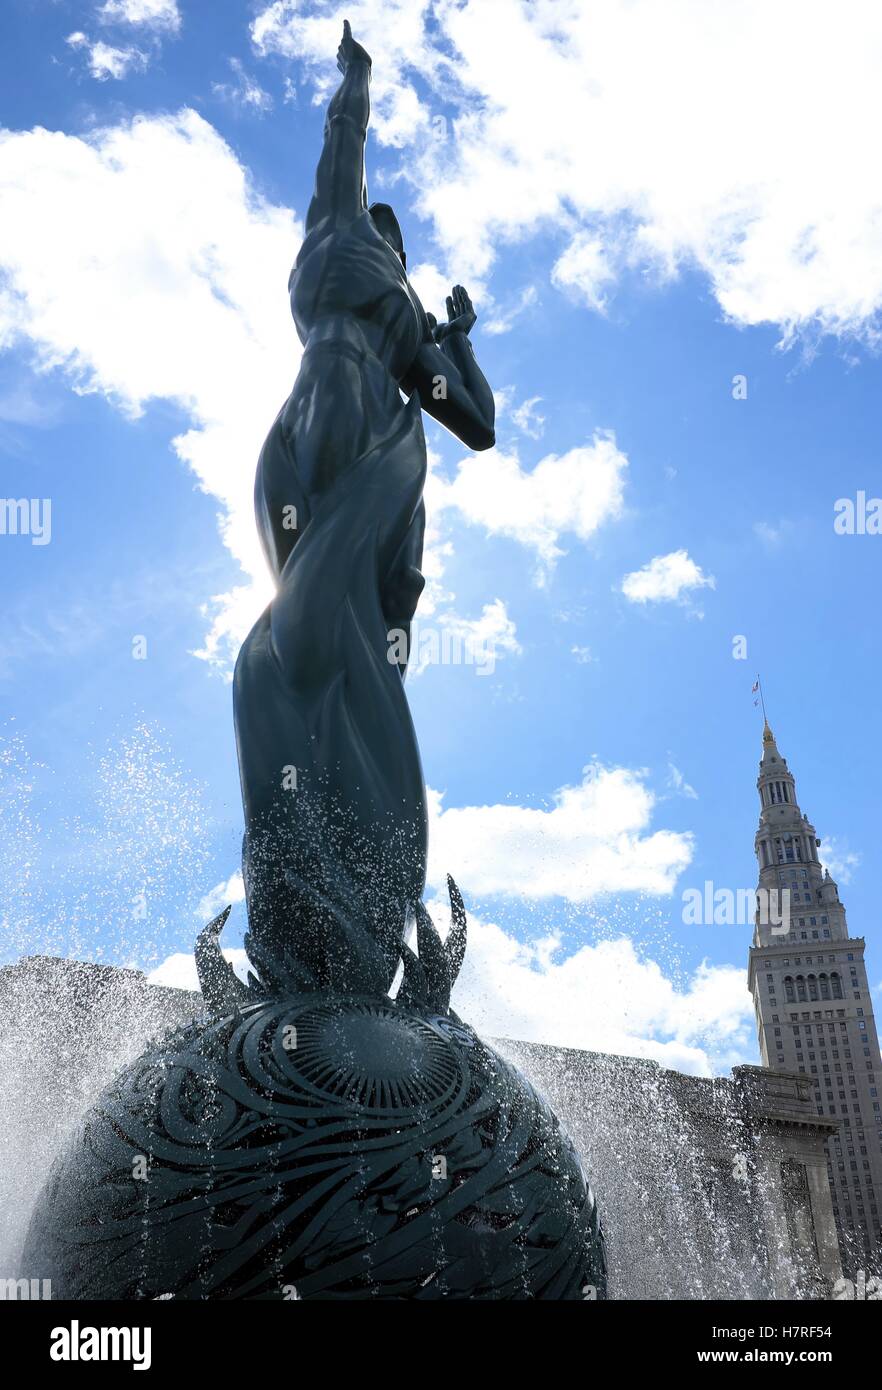 La Fontana della vita eterna, conosciuta anche come la Fontana del Memoriale di guerra, di Marshall Fredericks è stata un punto di riferimento di Cleveland, Ohio dal 1964 Foto Stock